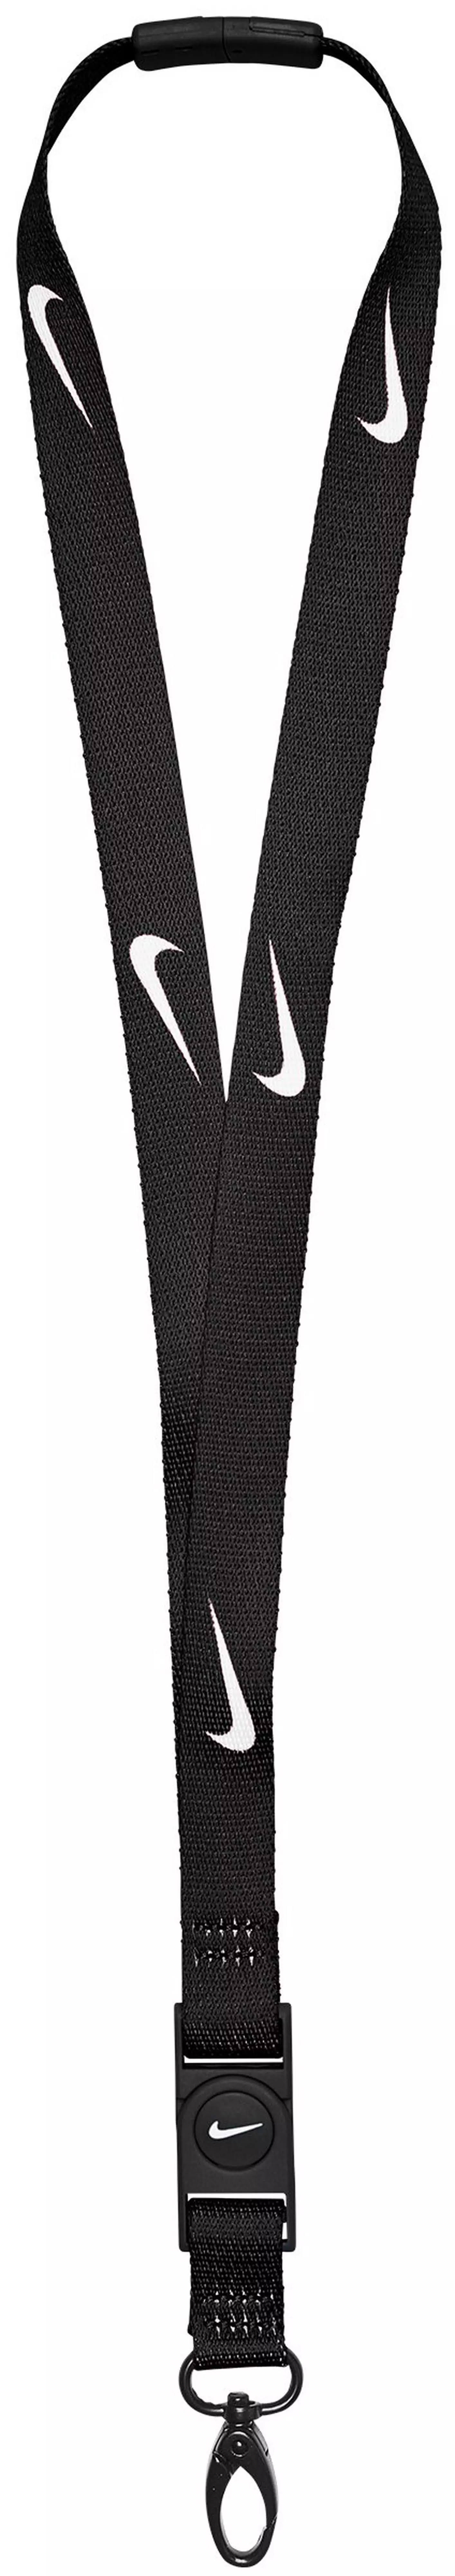 Nike Premium Lanyard - Black/White Breakaway Clip Lanyard | Image